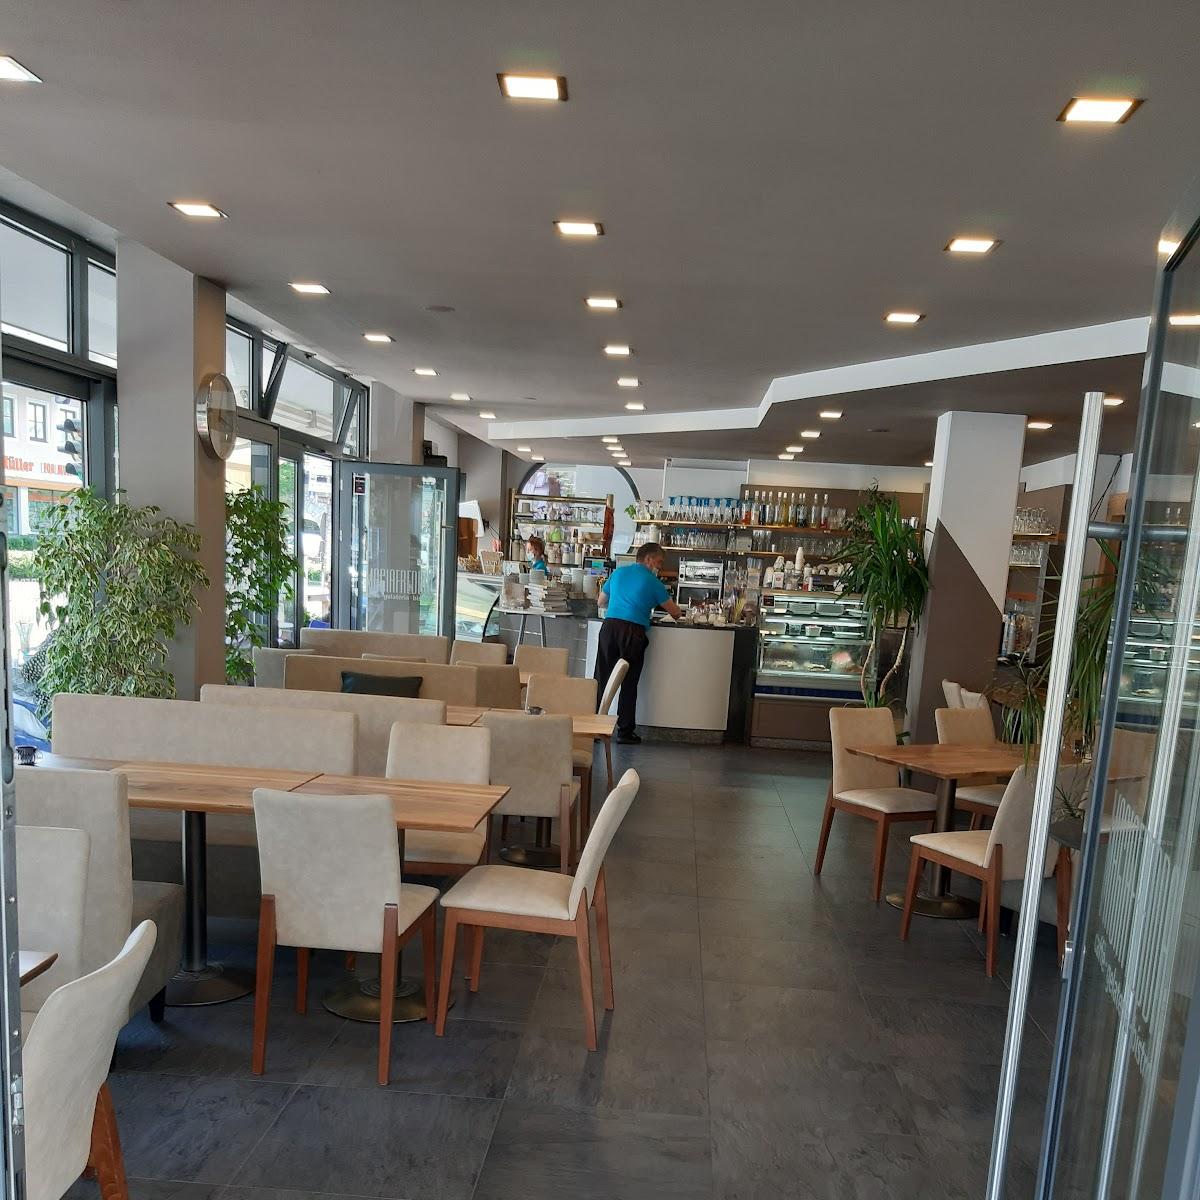 Restaurant "Eiscafé Magia Fredda" in Garmisch-Partenkirchen